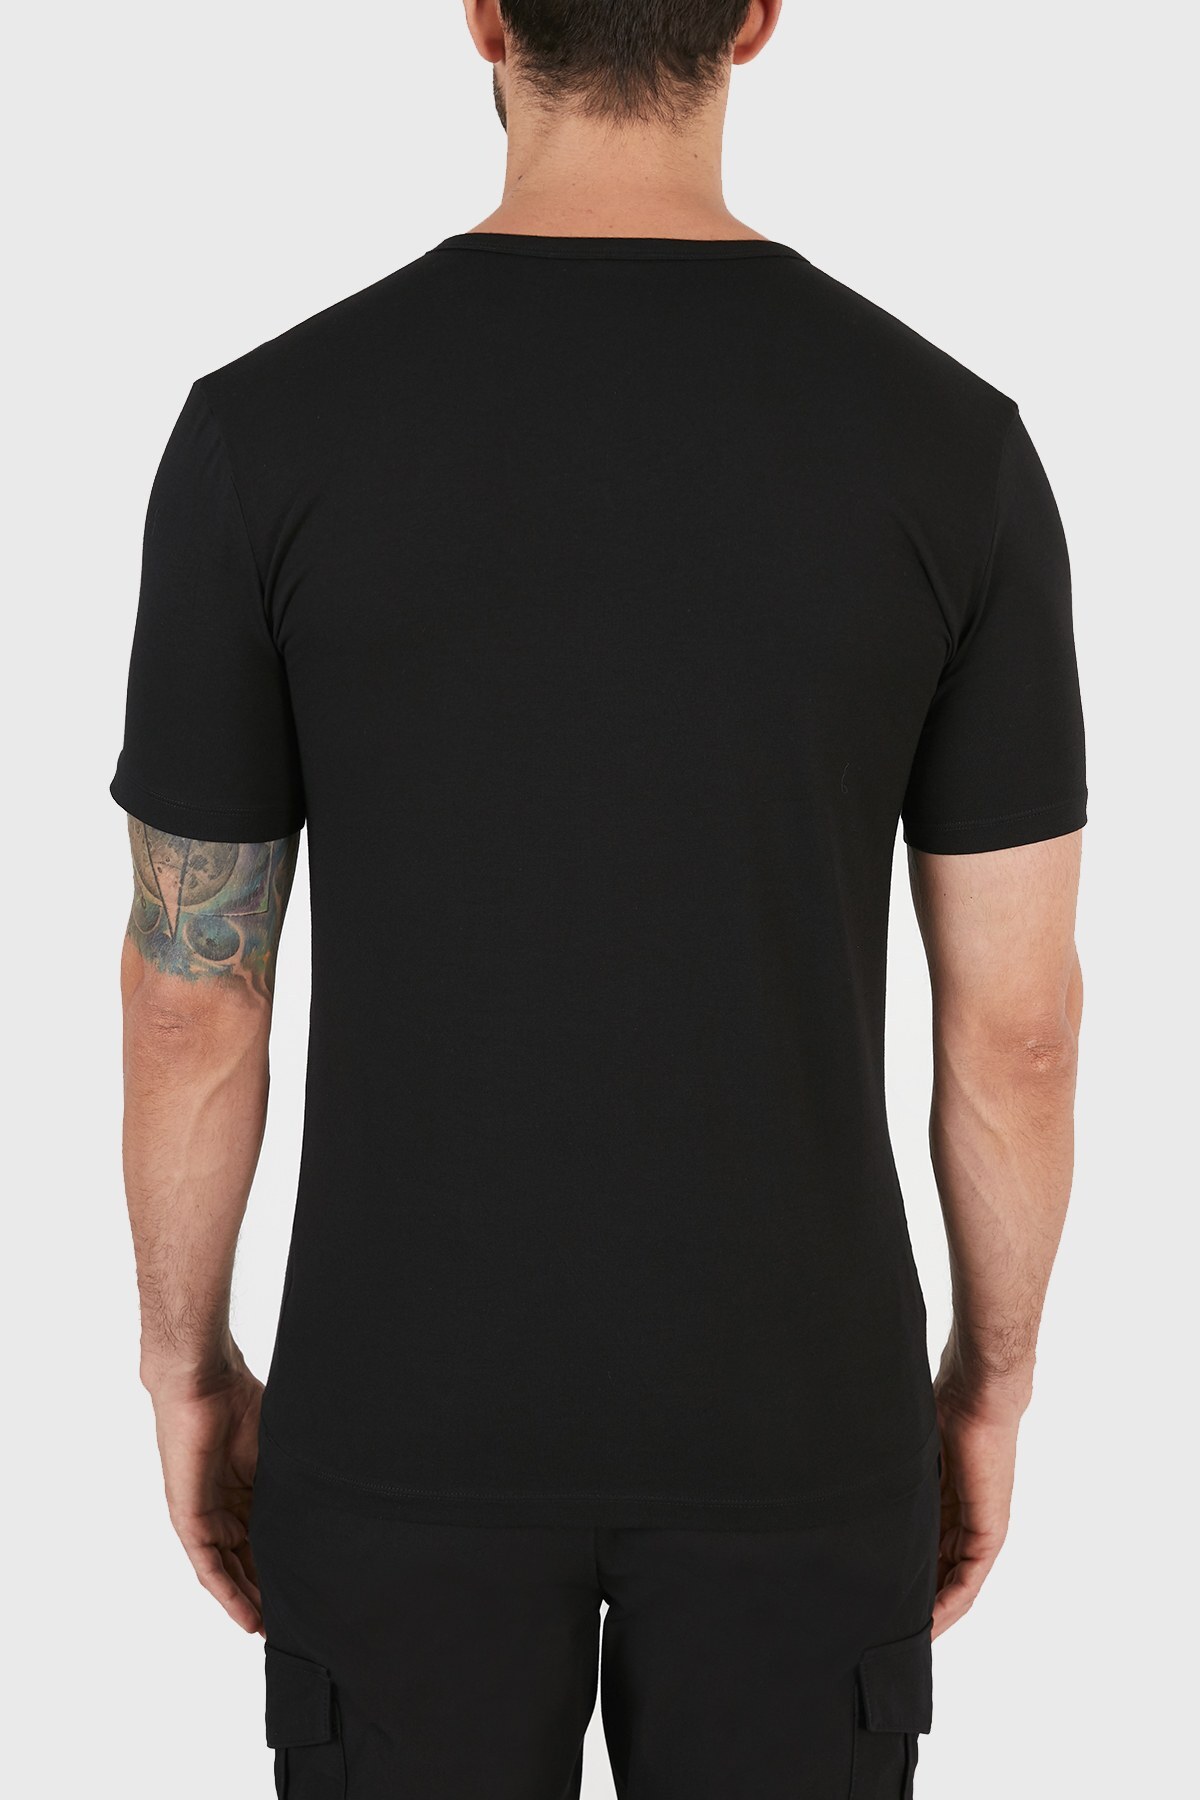 Hugo Boss Slim Fit V Yaka 2 Pack Erkek T Shirt 50325408 001 SİYAH